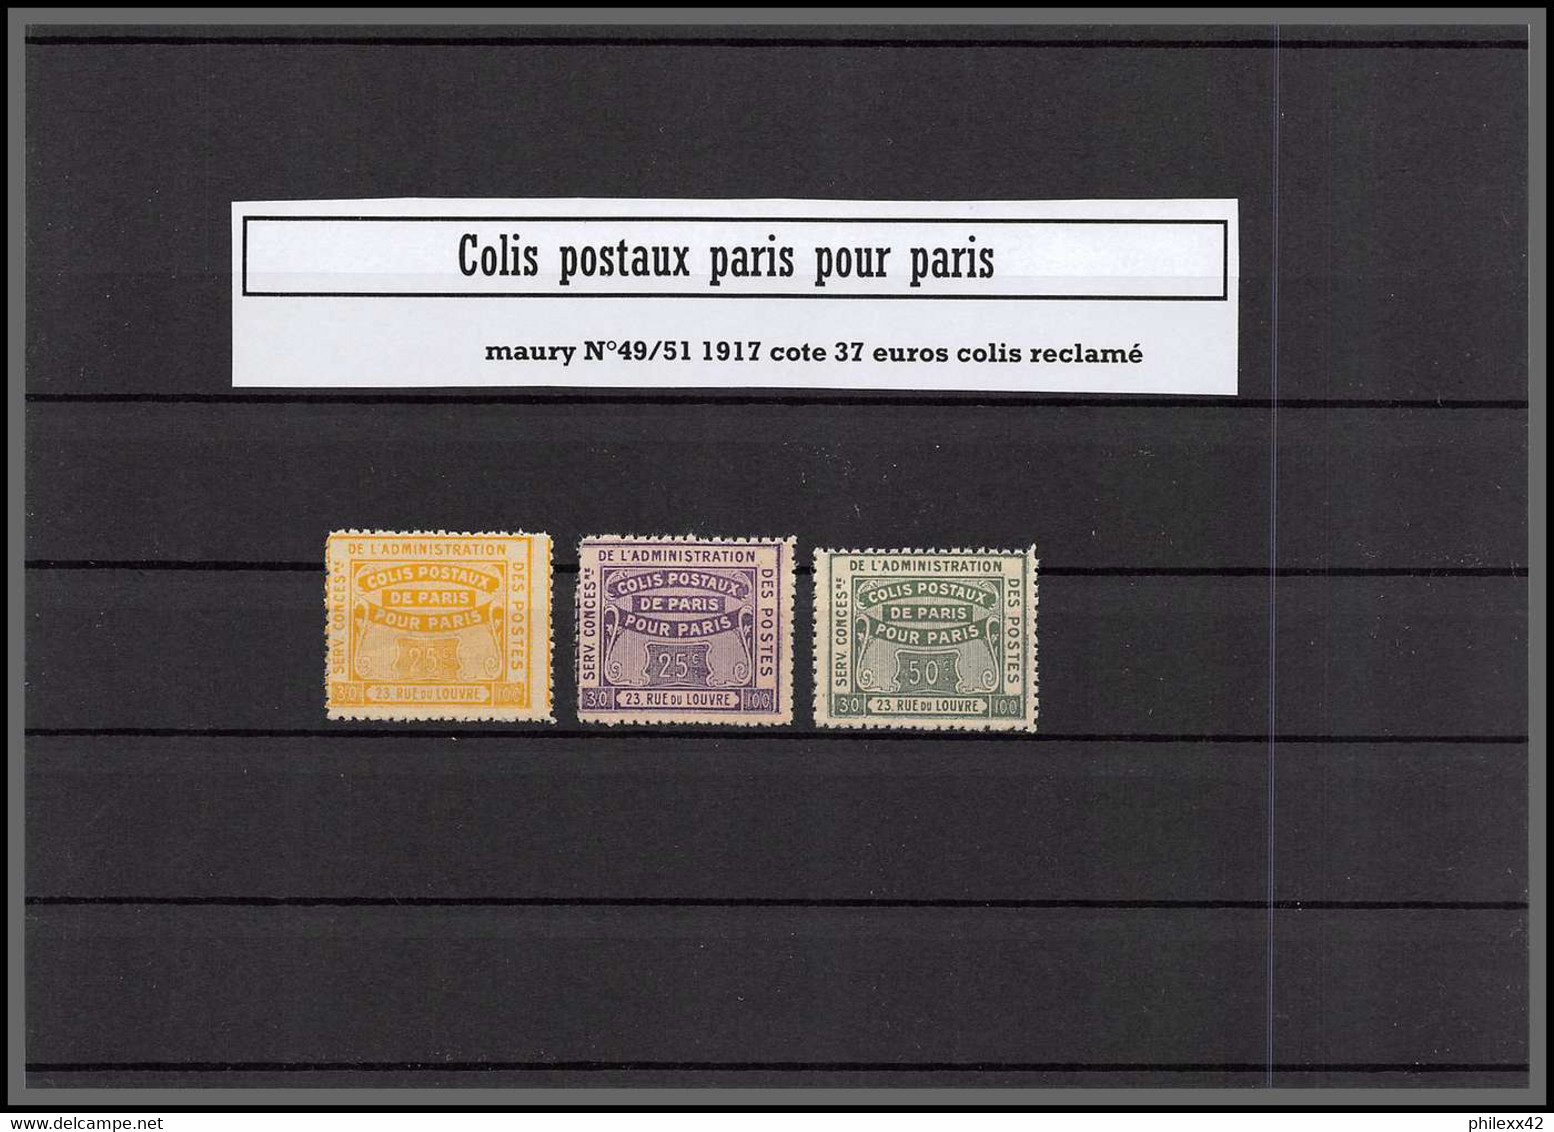 départ 1 euros - Collection lot 2b Colis postaux paris cote 686 euros dont bonnes valeurs tous differents 1890/1940